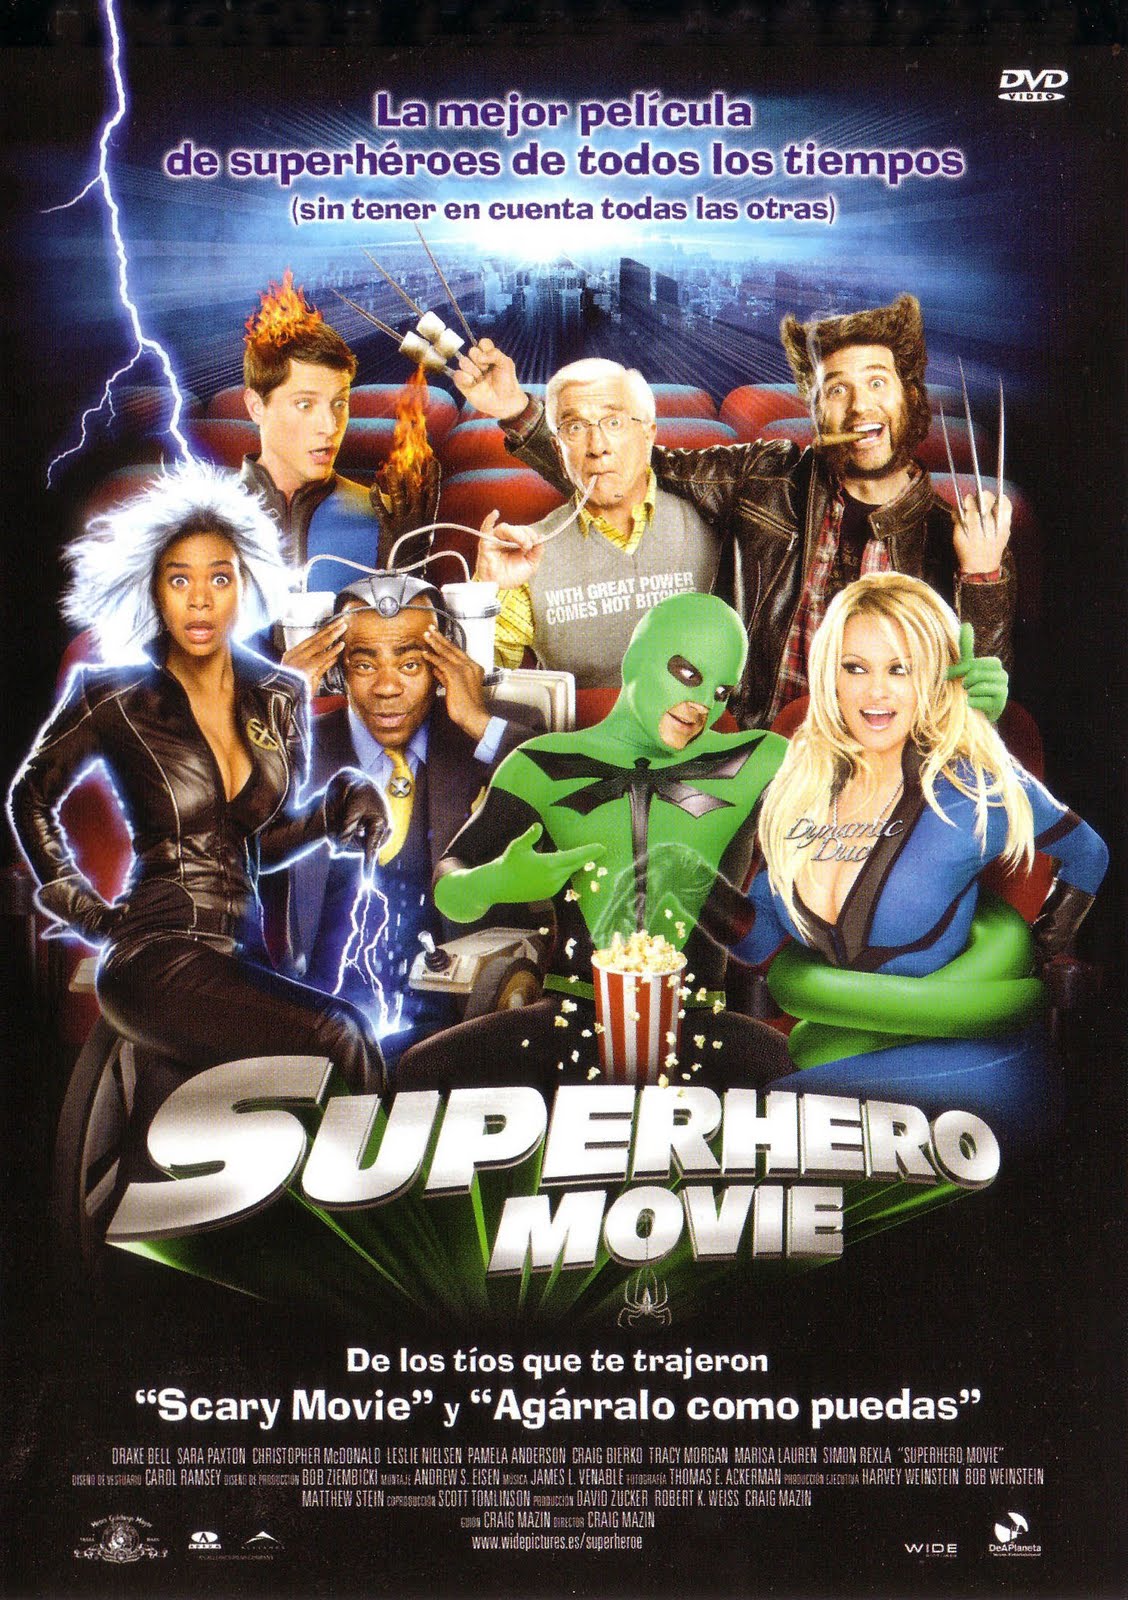 2008 Superhero Movie